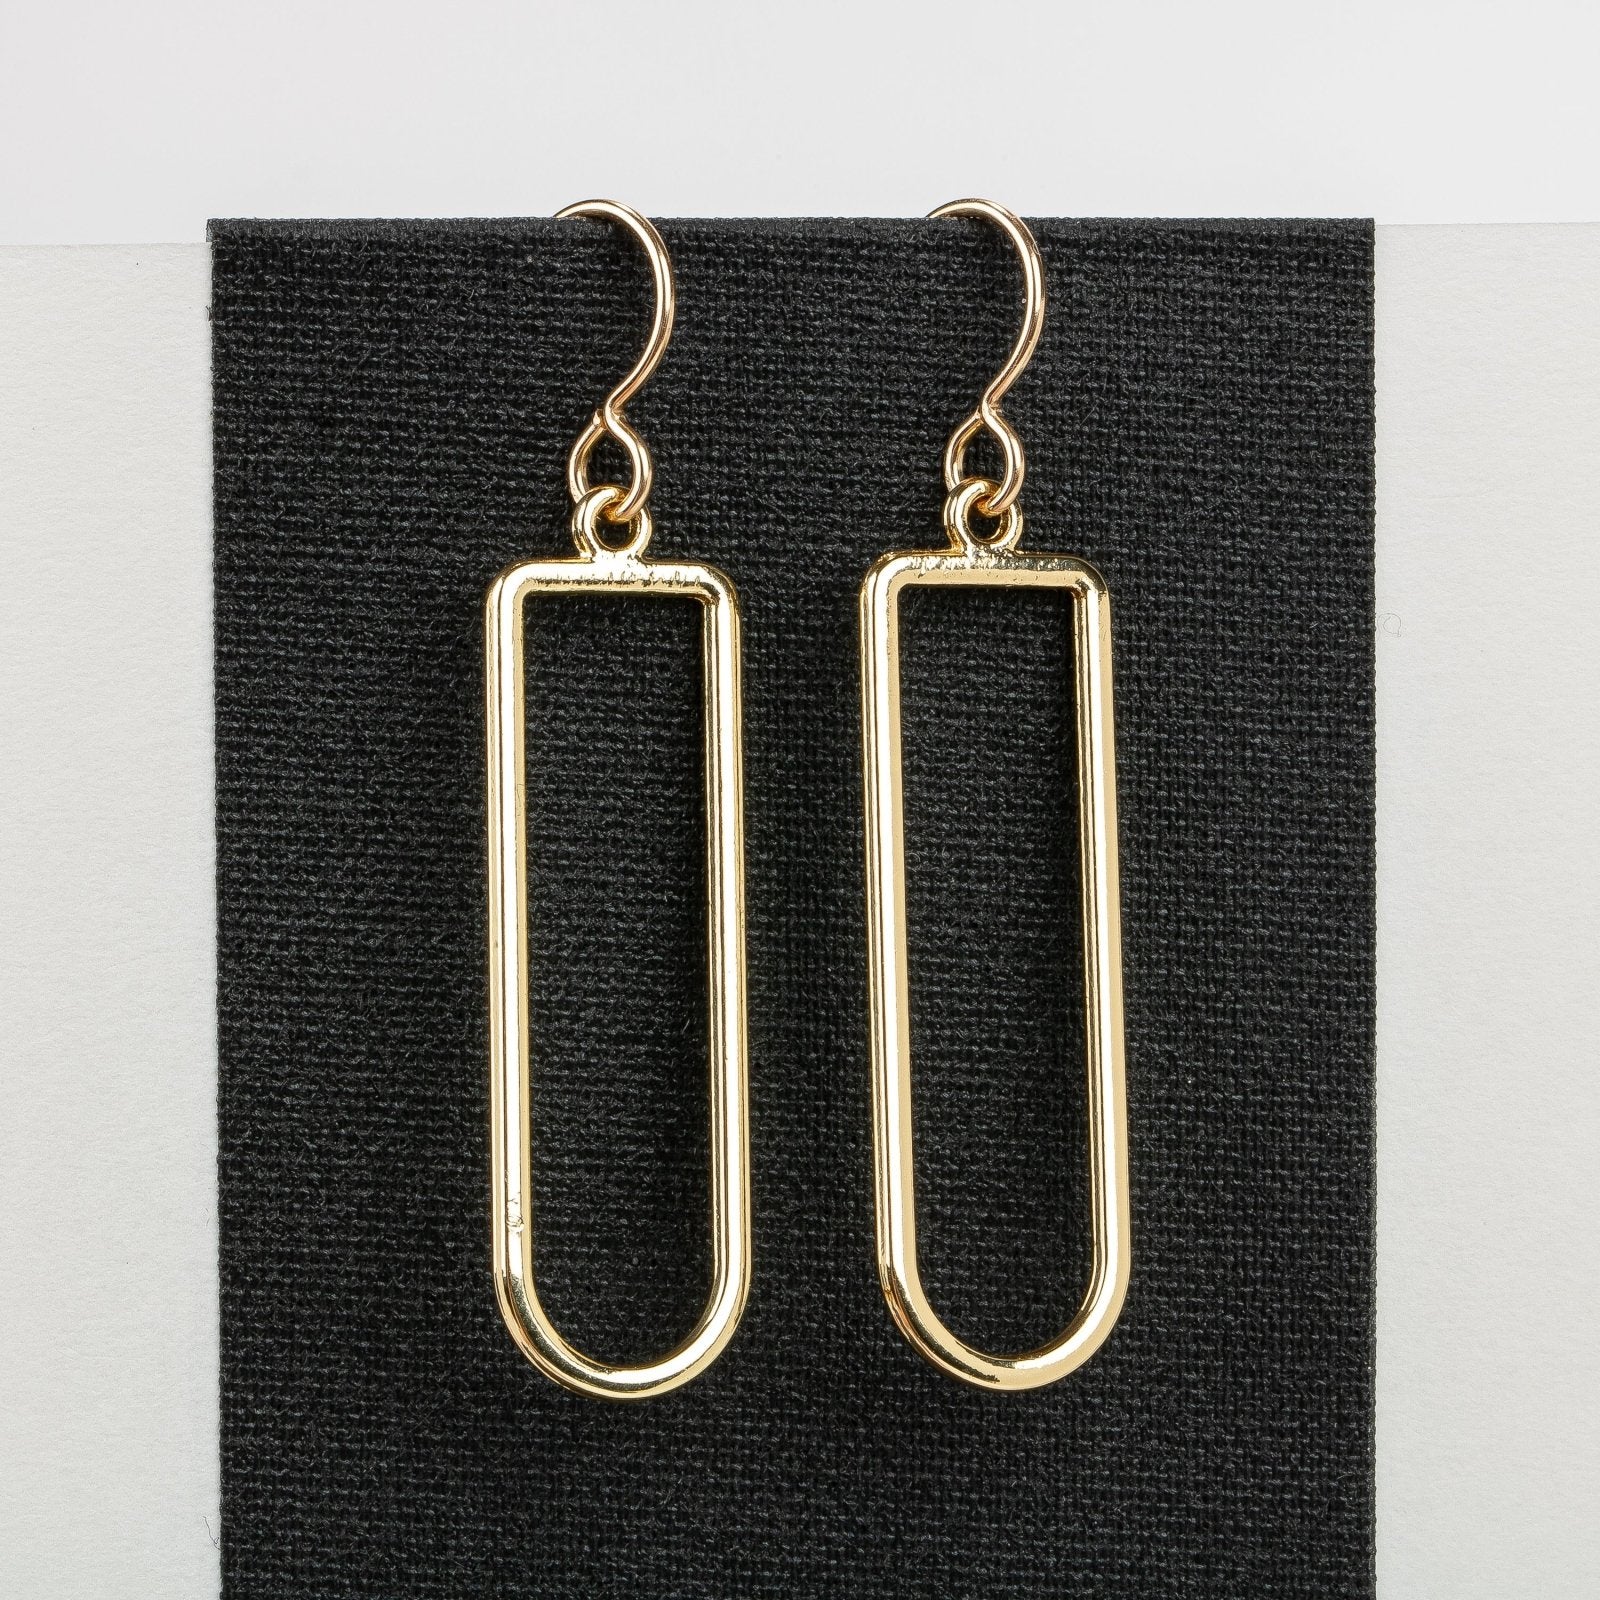 Gold Oval Drop Earrings - Melanie Golden Jewelry - dangle earrings, earrings